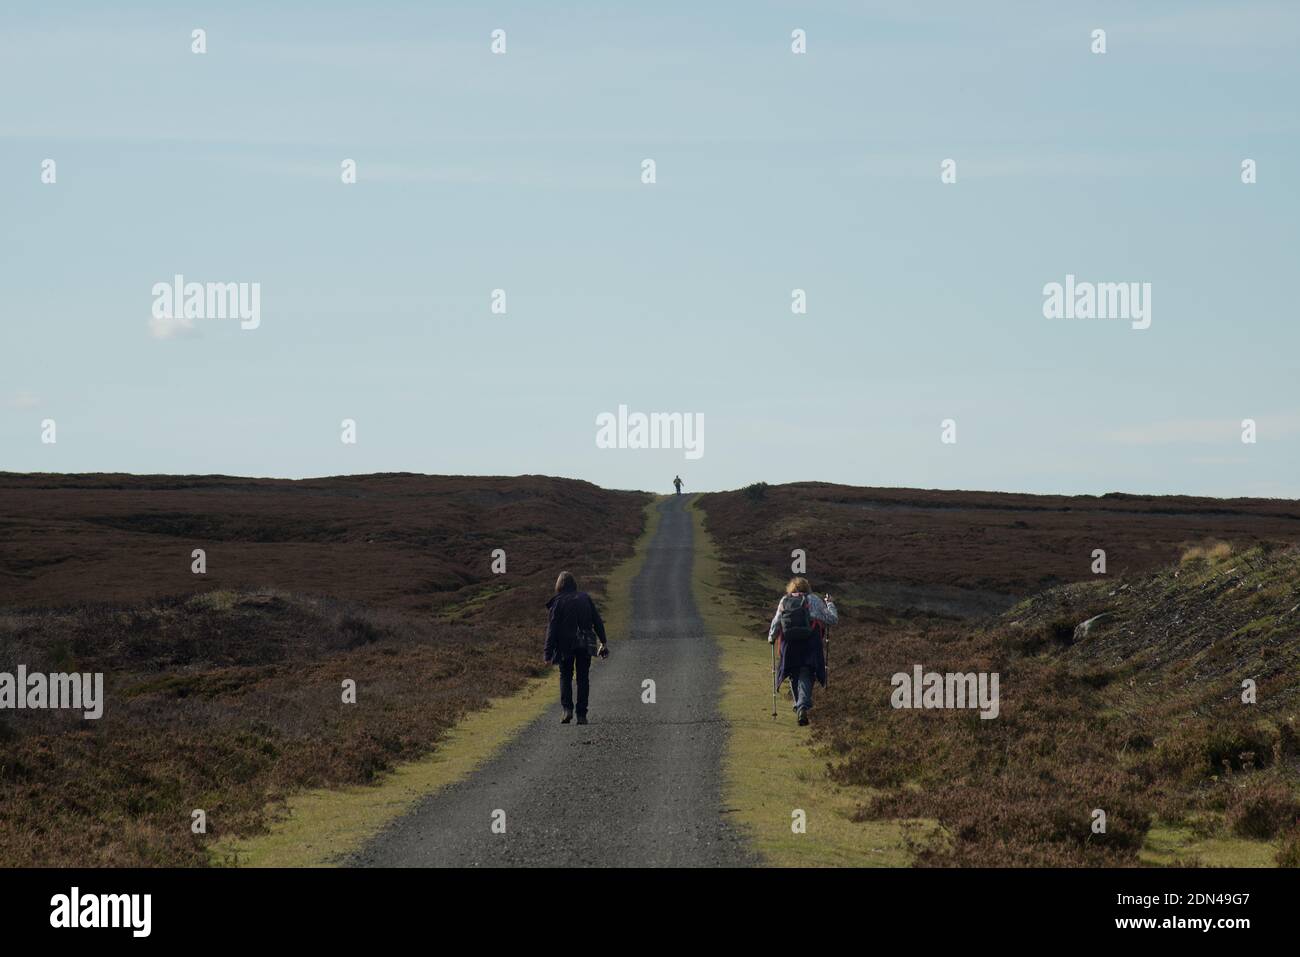 Zwei weibliche Wanderer auf dem Waskerly Way Moorweg Mit einem einzigen Wanderer skizziert auf dem fernen Horizont bilden Eine starke dreieckige Form Stockfoto